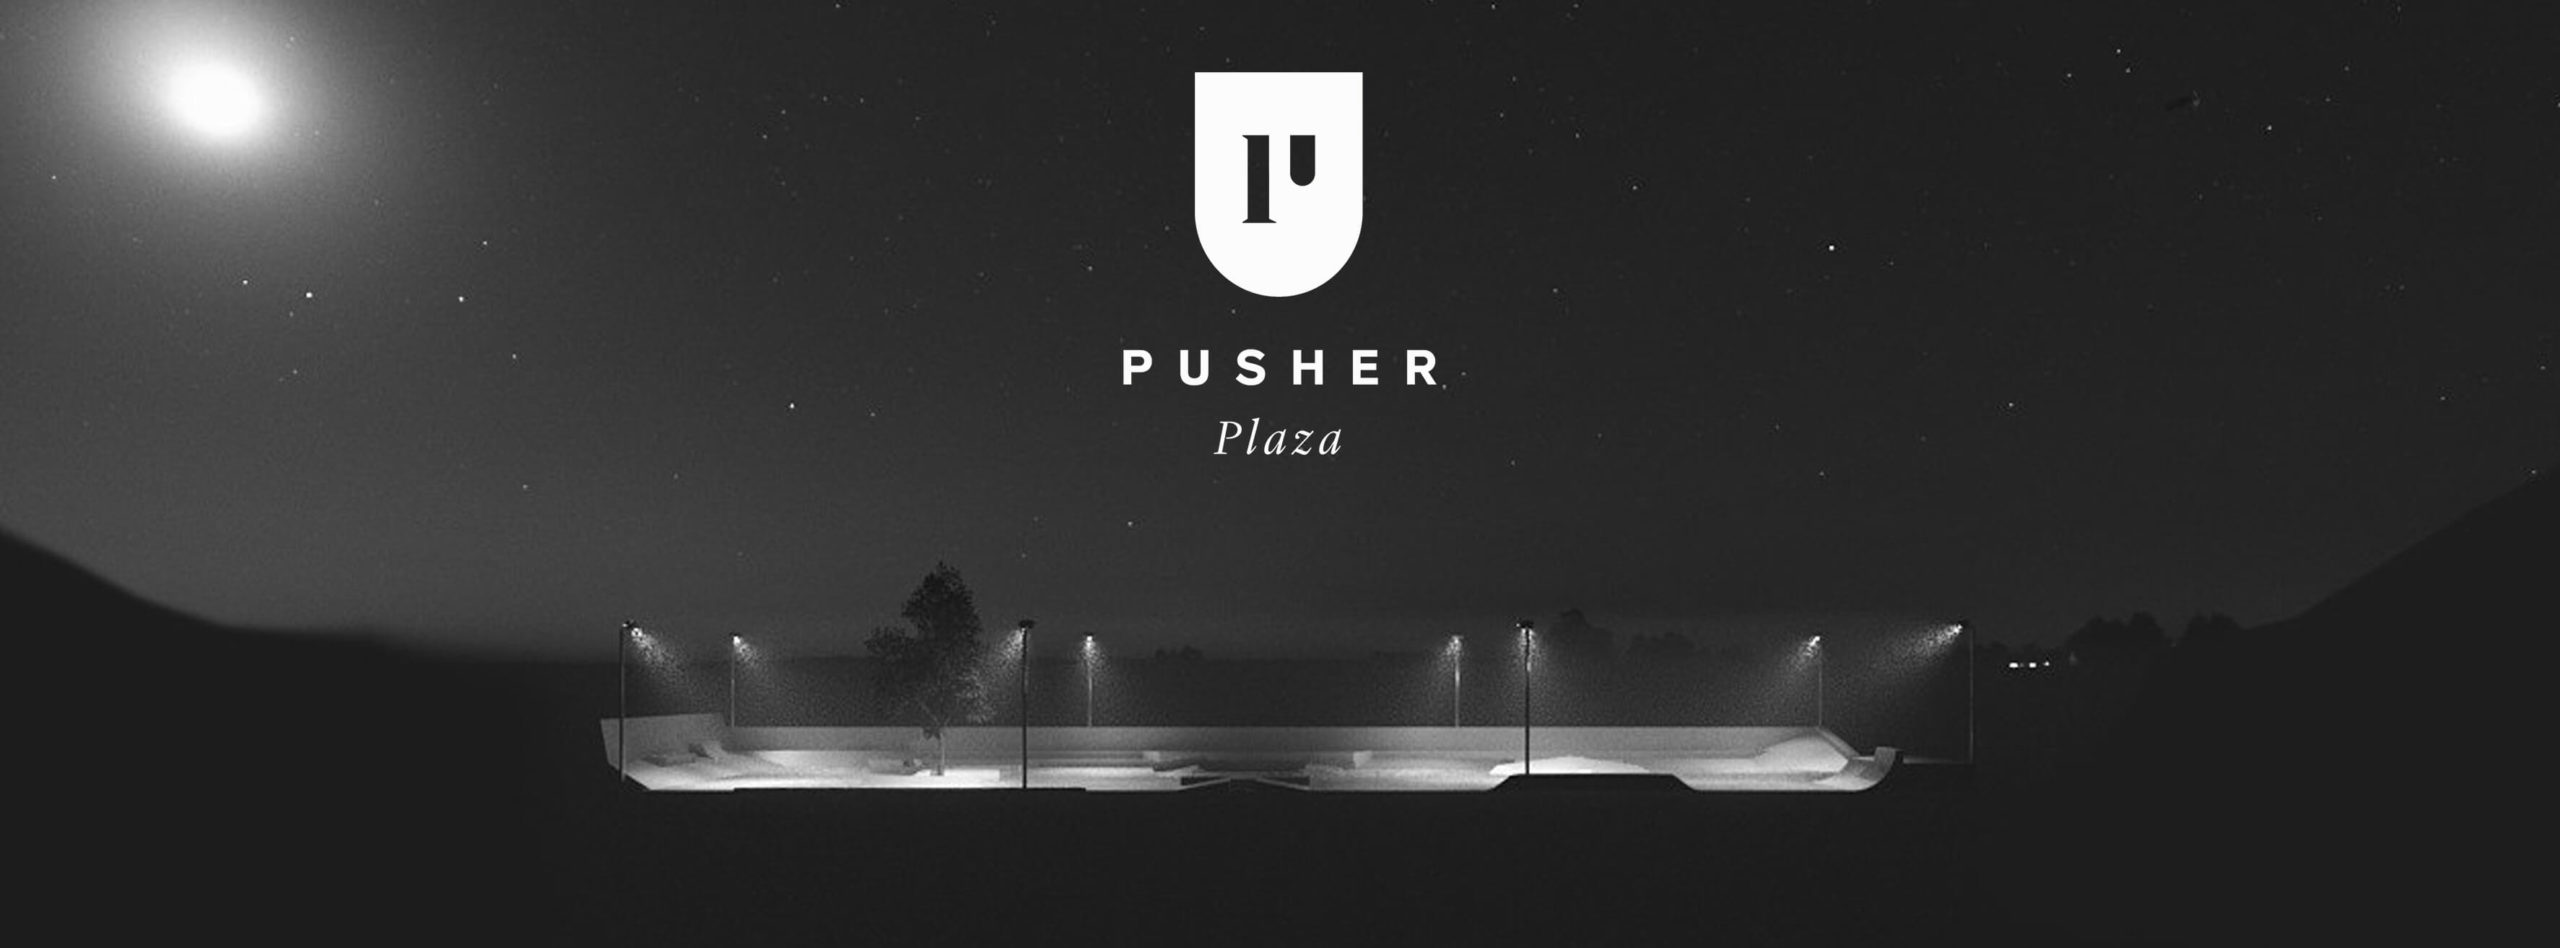 (c) Pusher.at